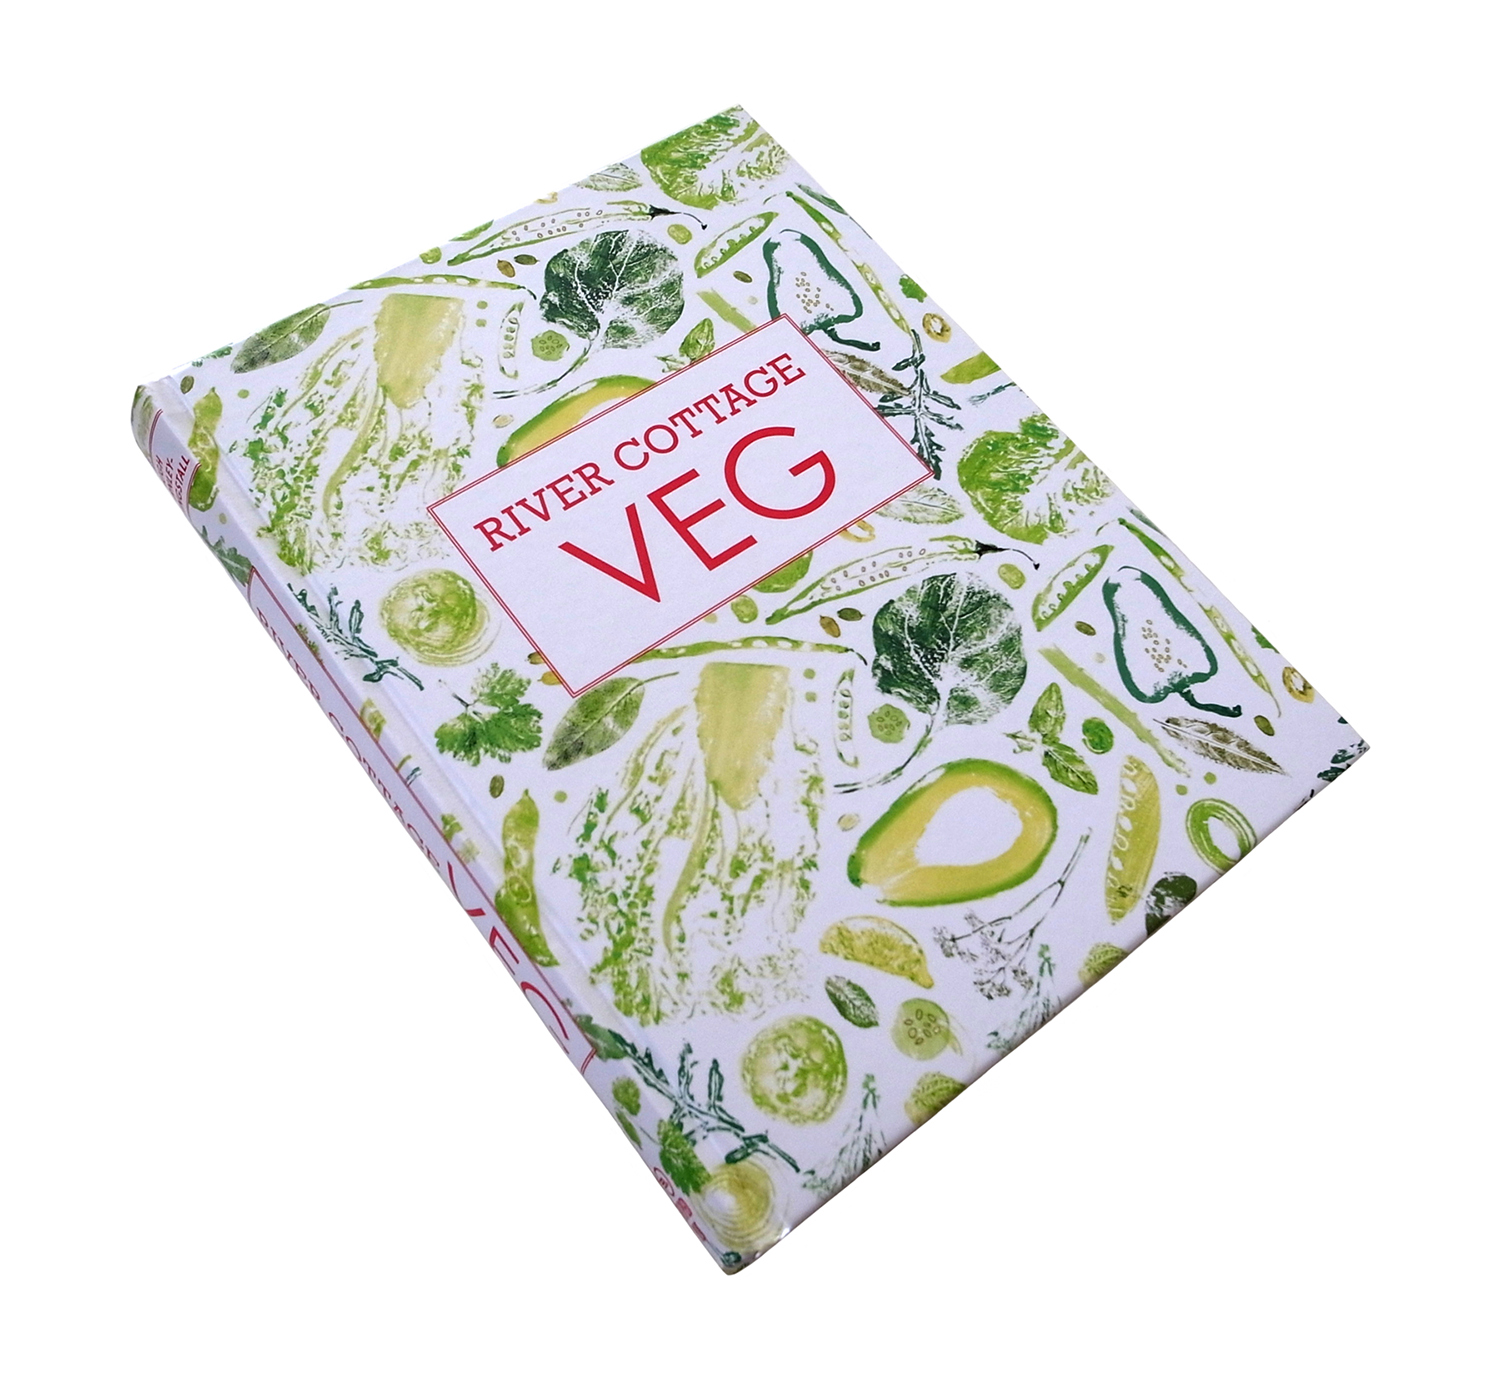 River Cottage veg cookbook